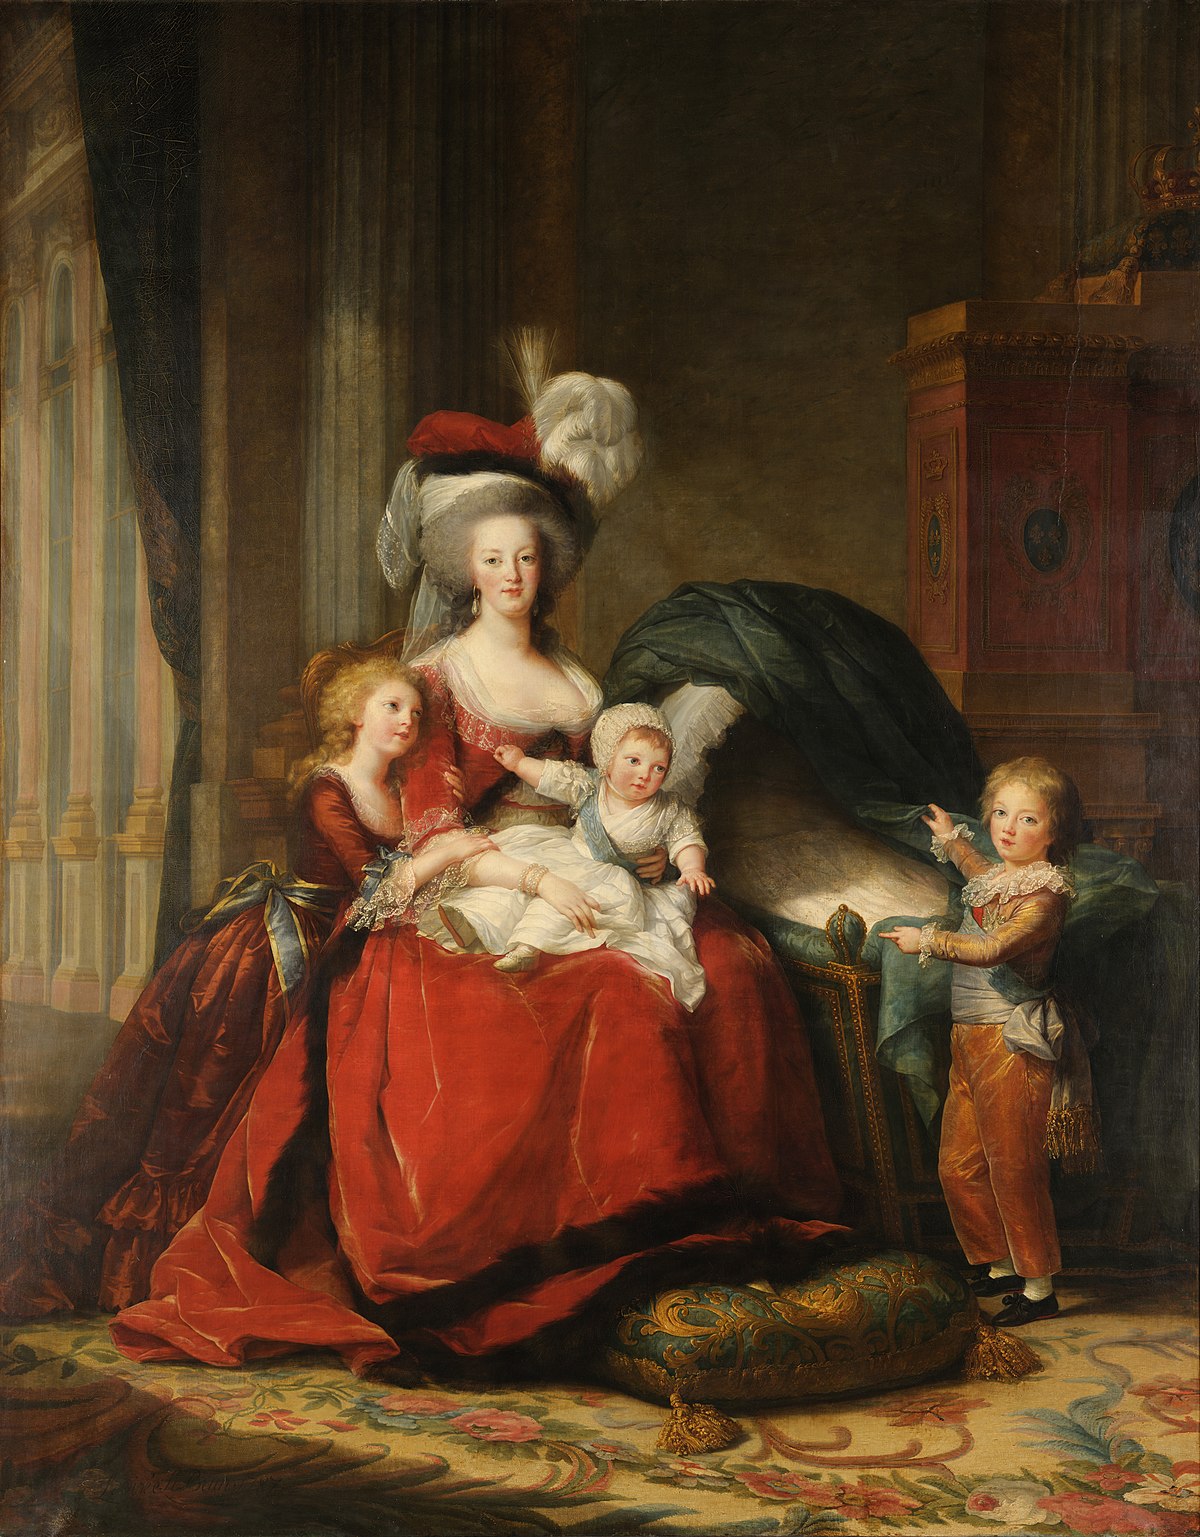 Élisabeth Louise Vigée Le Brun "Marie Antoinette And Her Children" (1787)